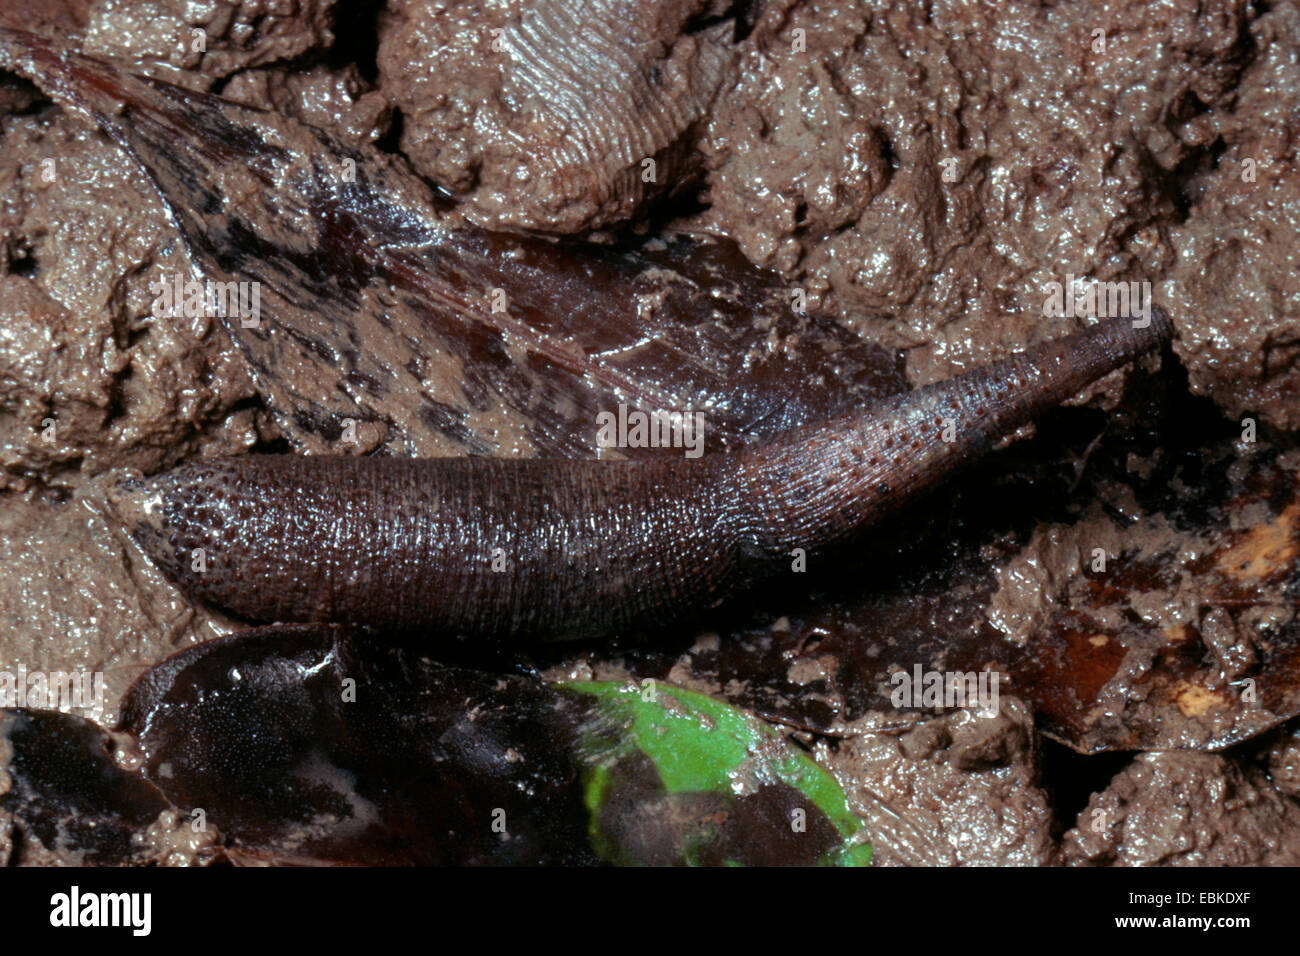 Marine worm (Phascolosoma lurco, Phascolosoma arcuatum), lying on wet rocky ground Stock Photo